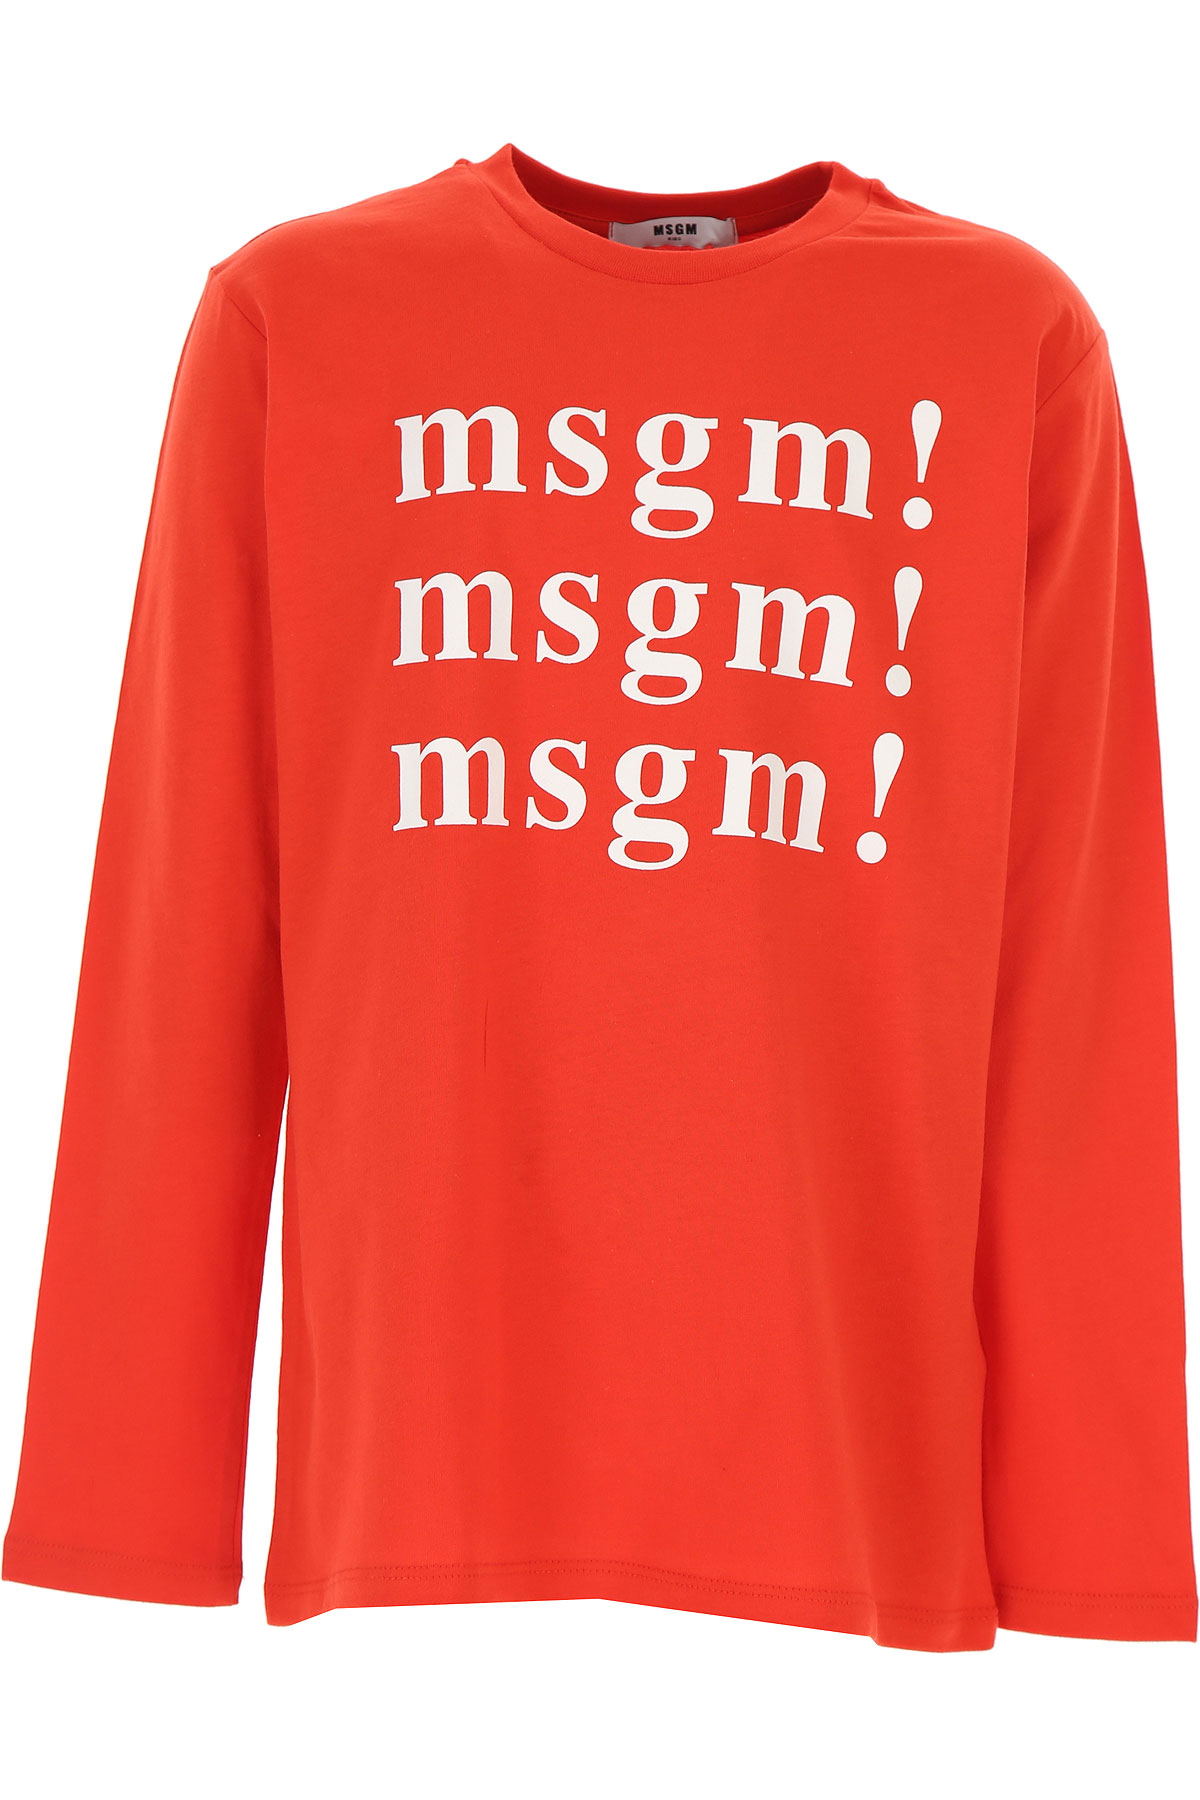 MSGM Kinder T-Shirt für Jungen Günstig im Sale, Rot, Baumwolle, 2017, 10Y 12Y 14Y